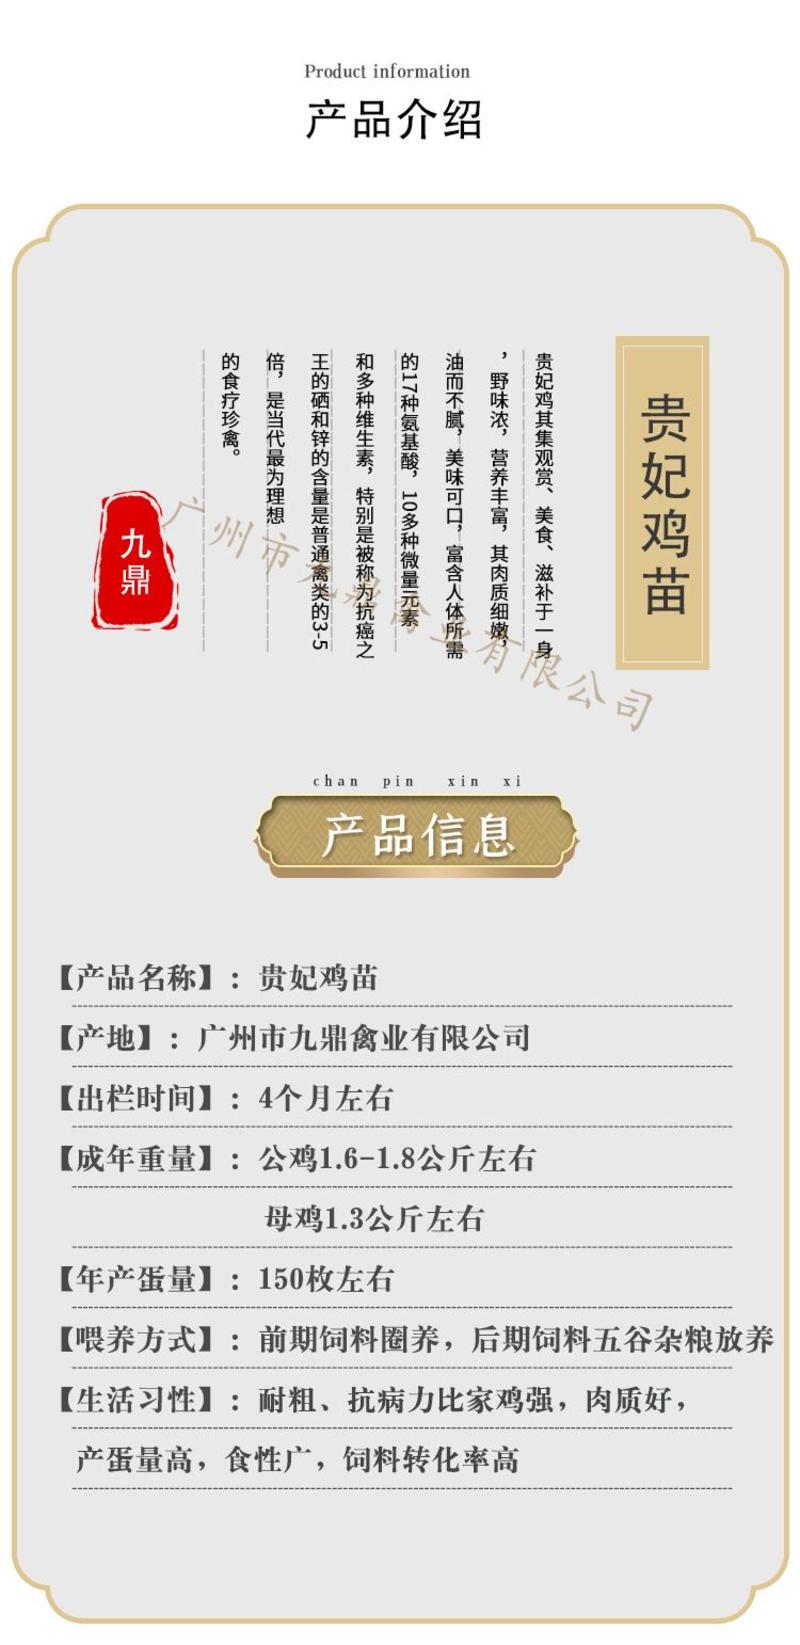 广州孵化场直售出壳贵妃鸡苗贵妇鸡苗帽子鸡苗包做疫苗